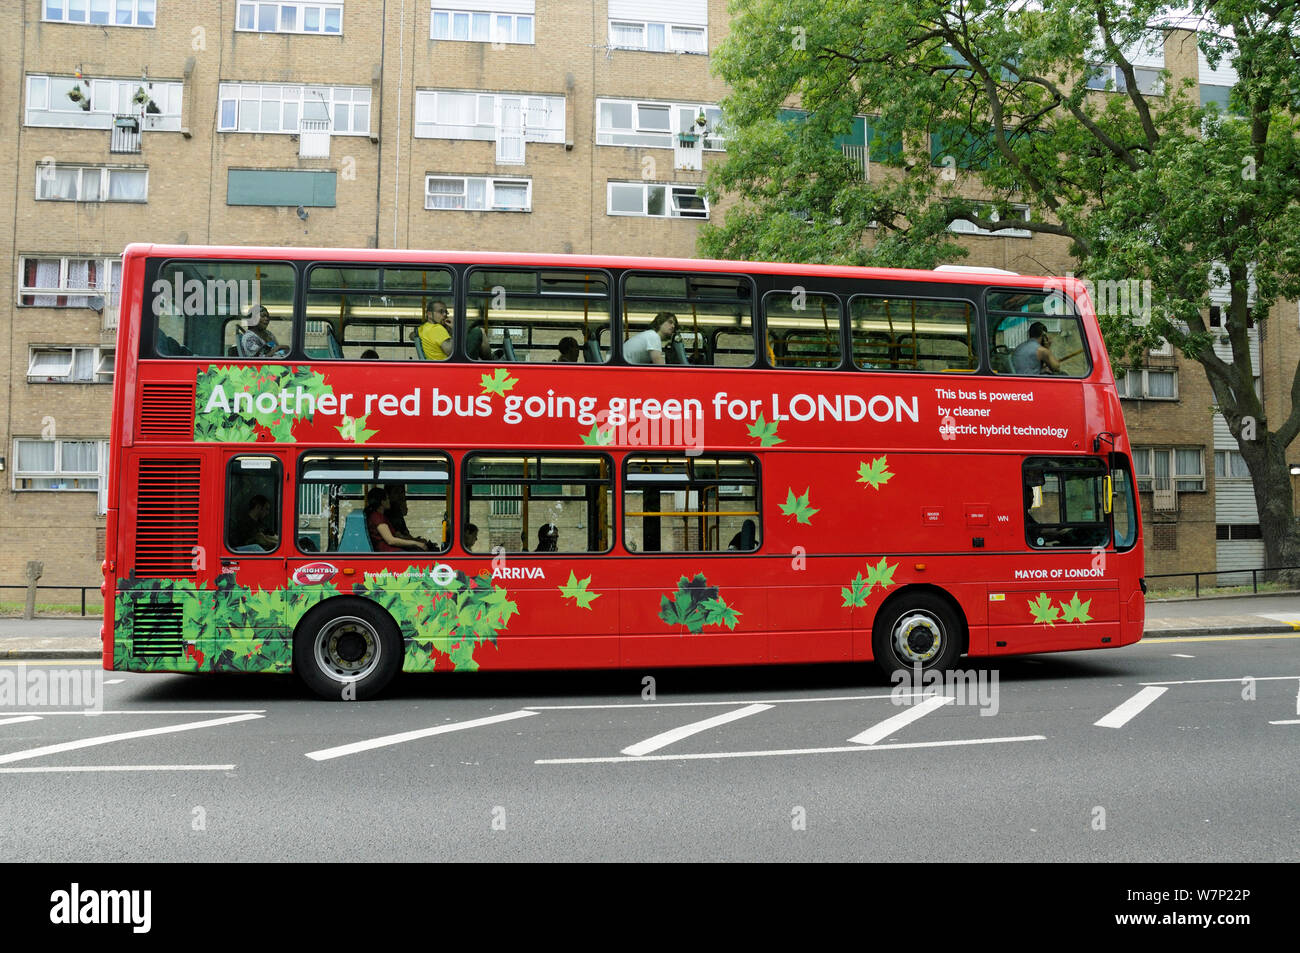 Londra dpuble-decker bus powered by tecnologia ibrida elettrico, London, Regno Unito - Agosto 2009 Foto Stock